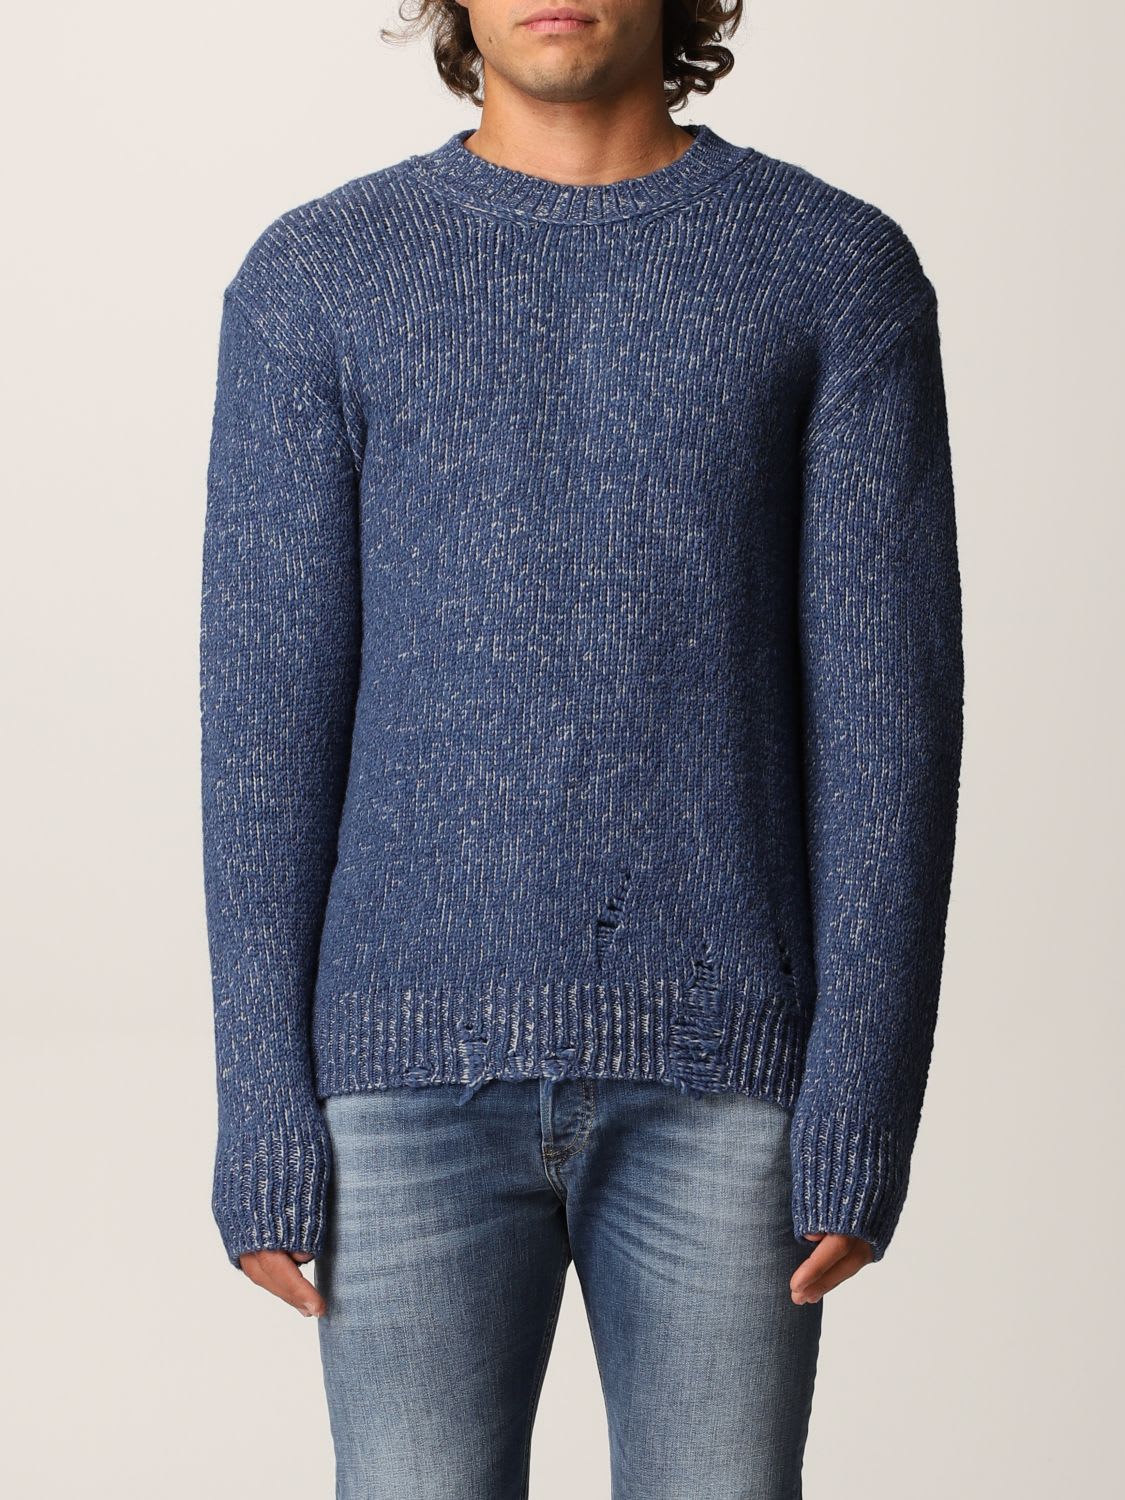 Diesel Sweater Diesel Pullover In Mélange Wool Blend